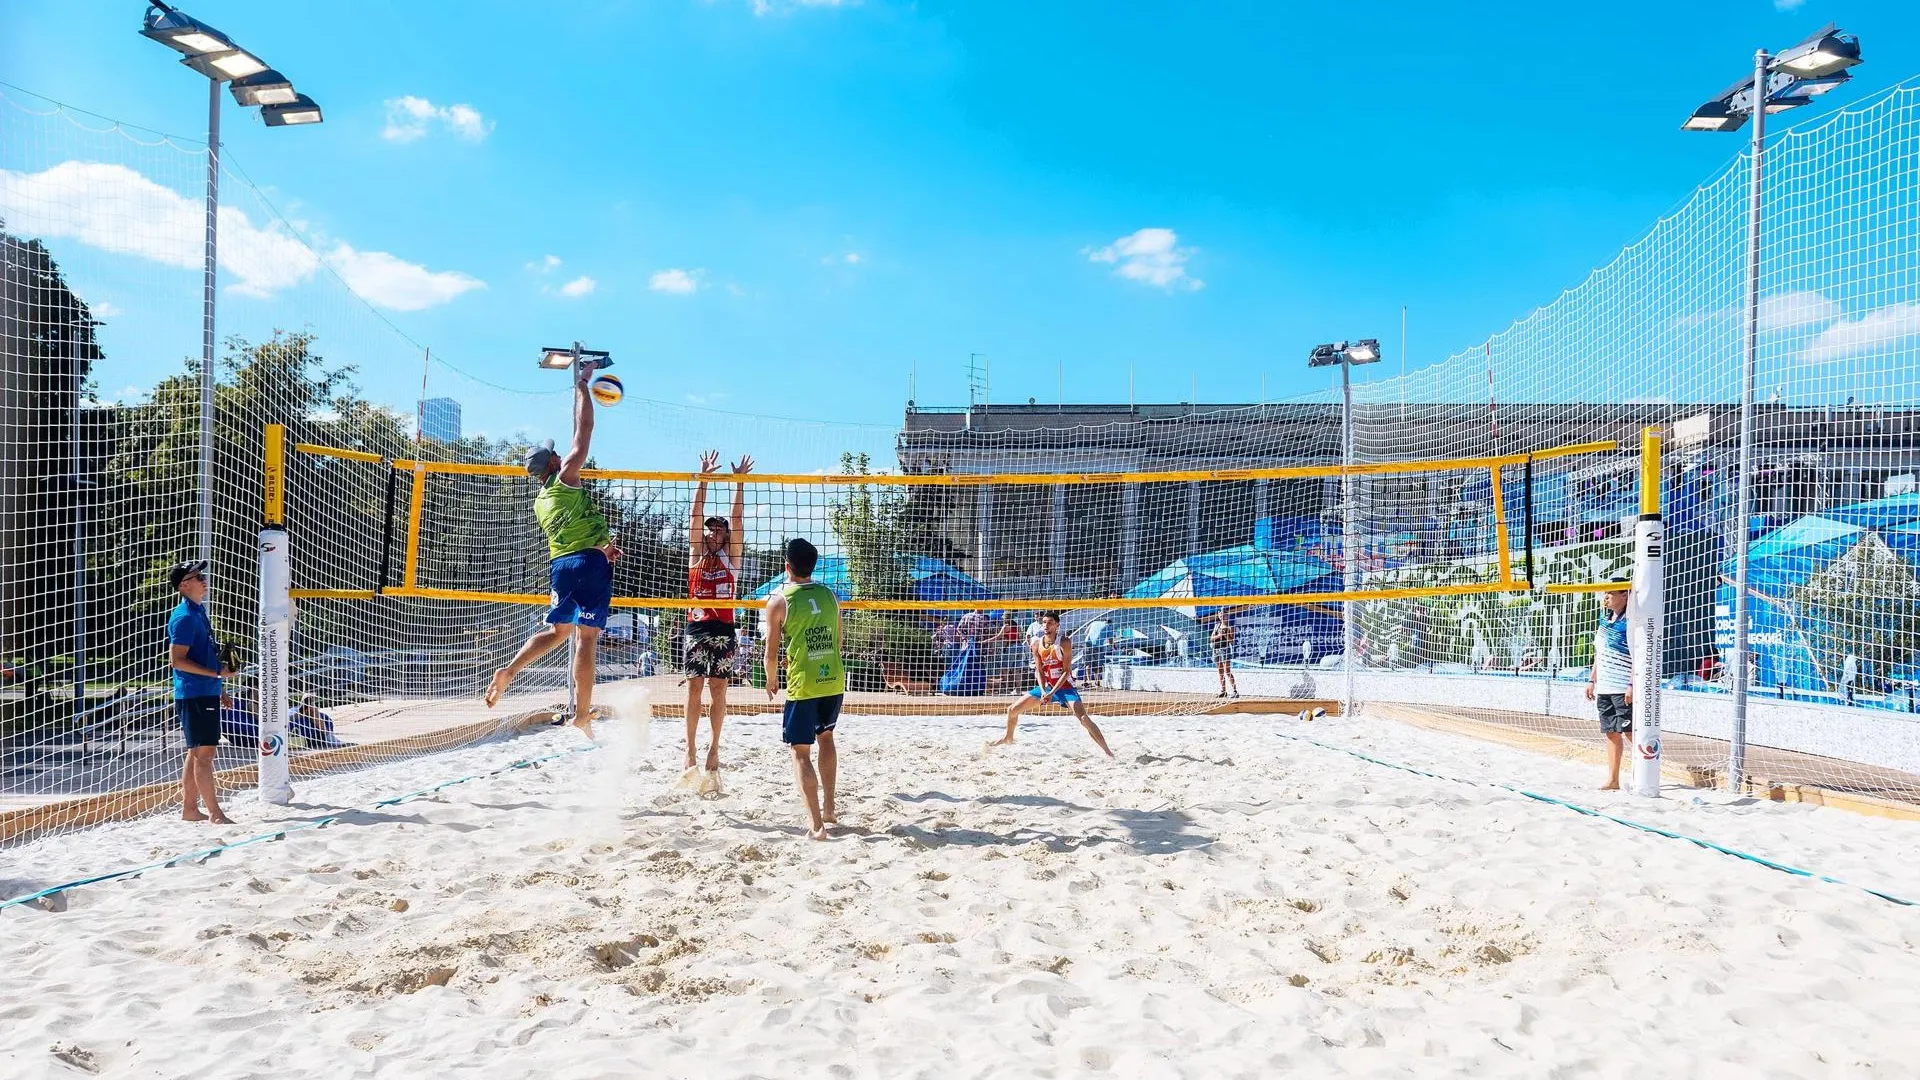 Матчи по пляжному волейболу проводят на площадке «Моего района» в Лужниках